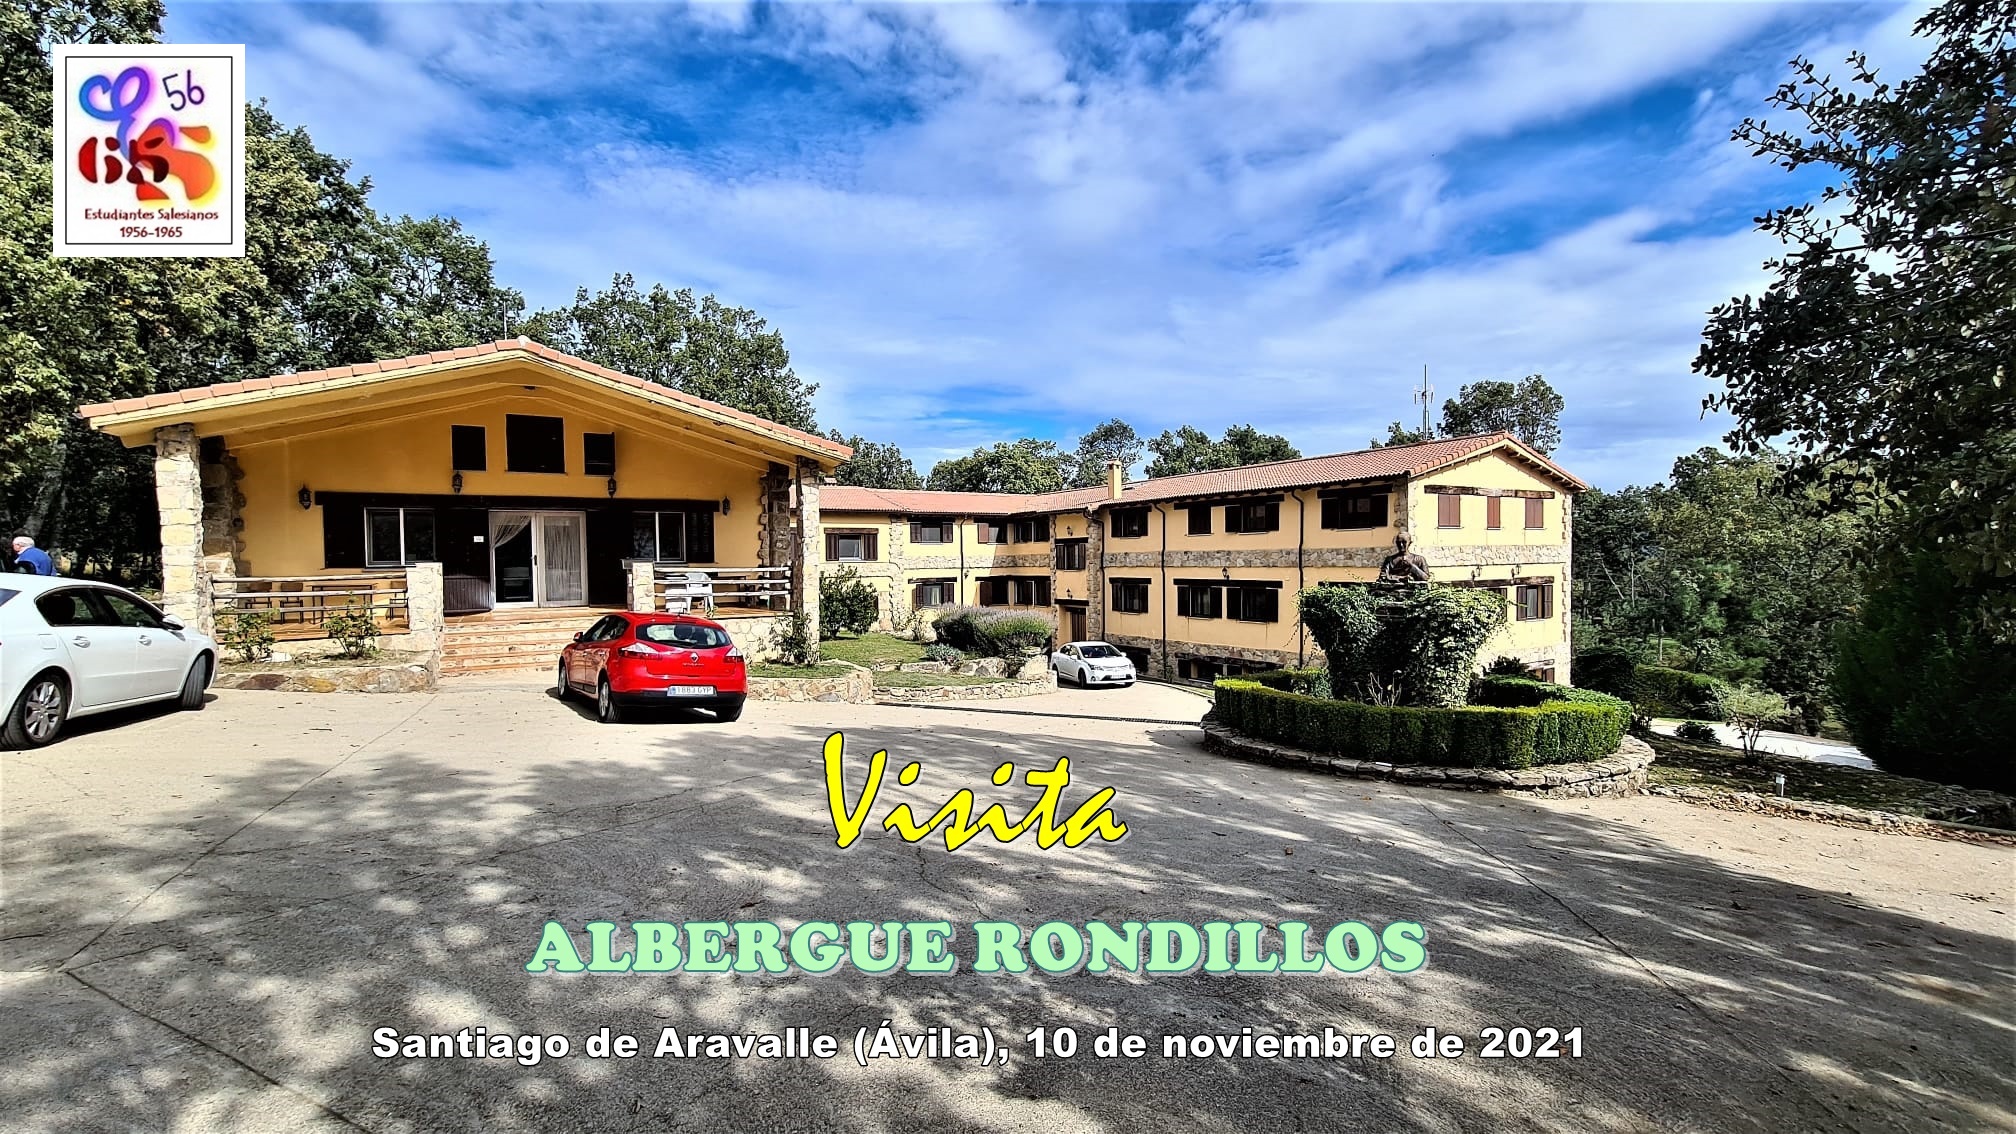 Visita al Albergue Rondillos (1)